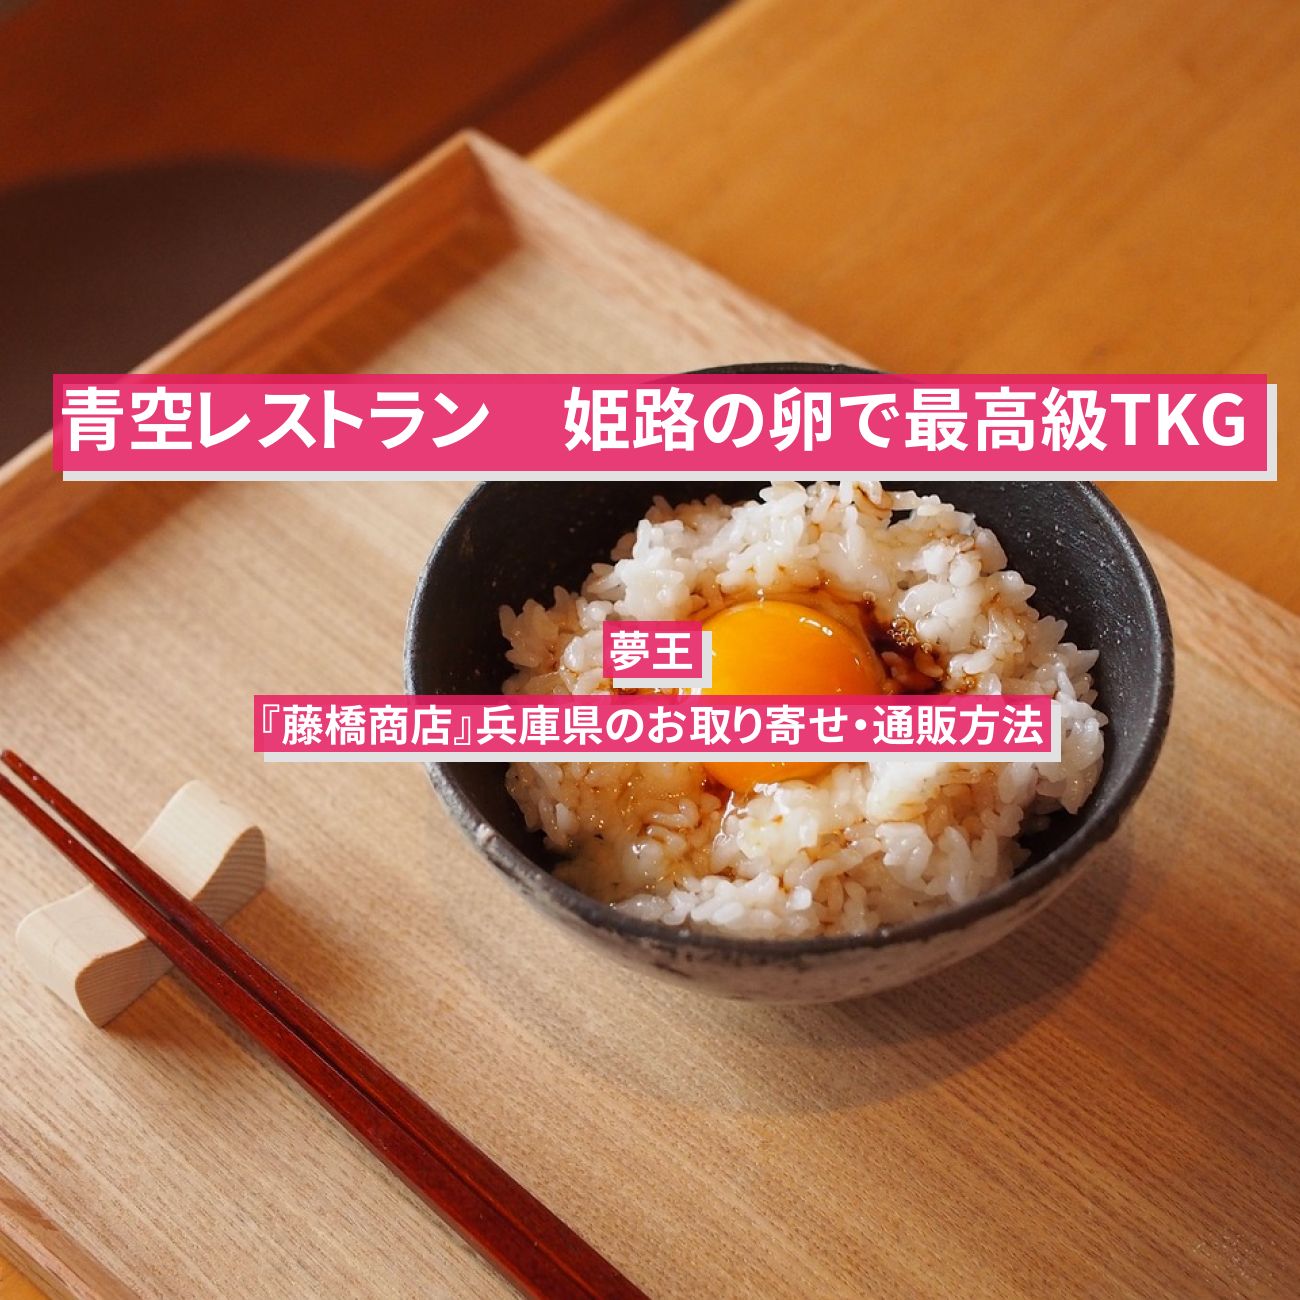 【青空レストラン】姫路の卵で卵かけご飯(TKG)『夢王・藤橋商店』の通販お取り寄せ情報